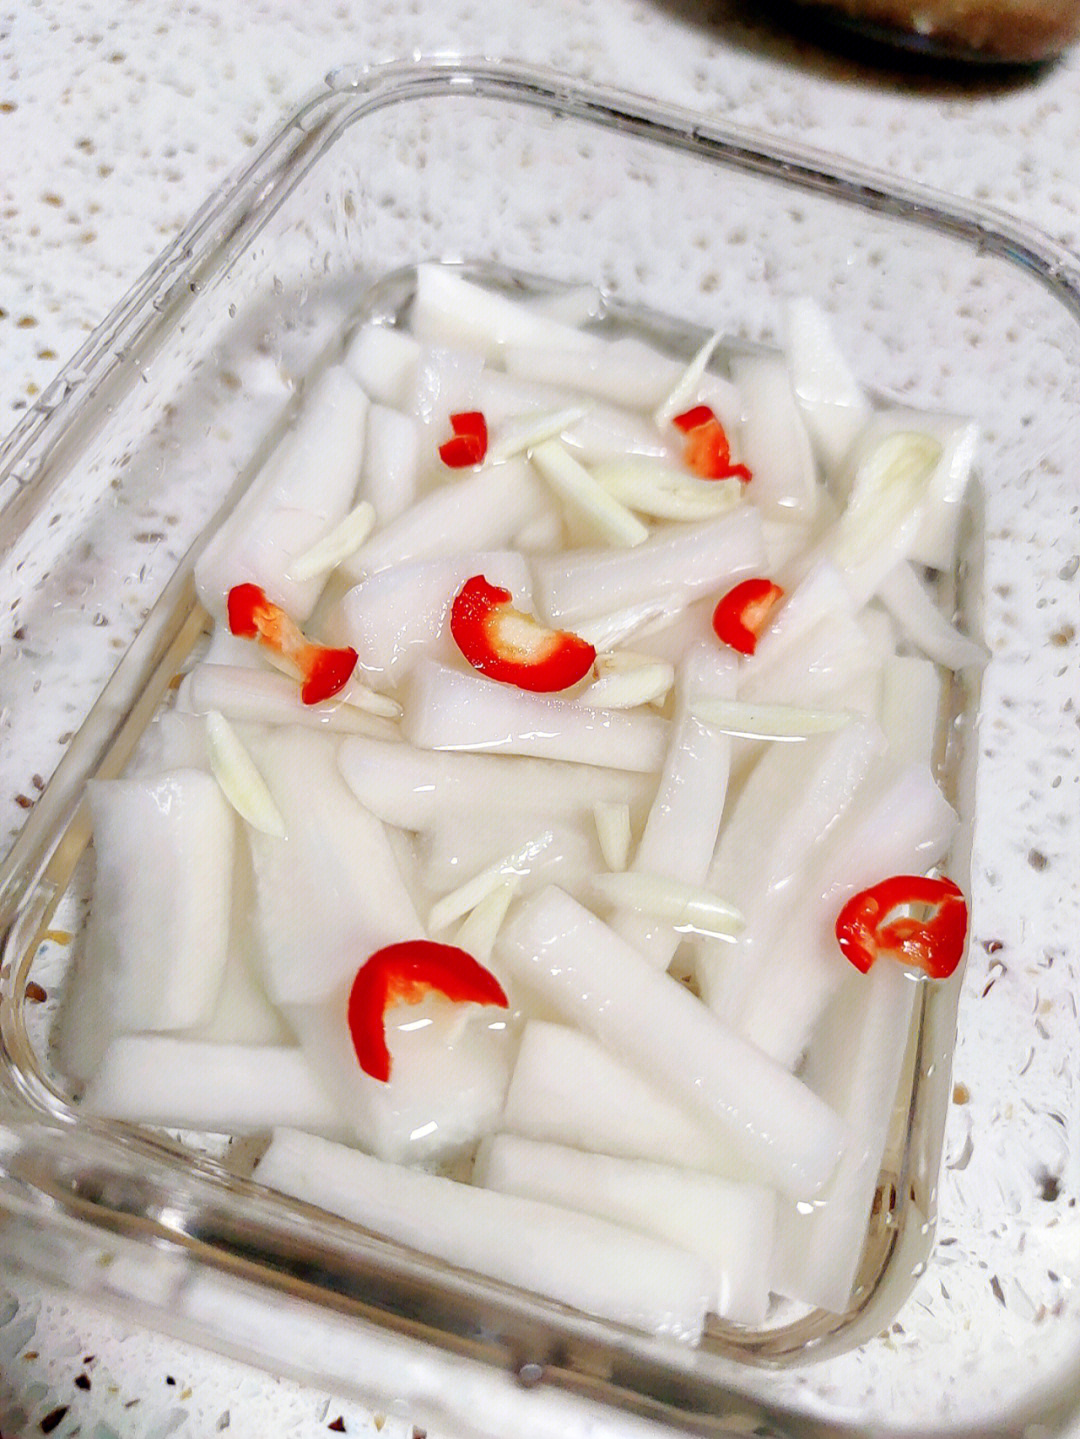 湖南酸萝卜的腌制方法图片